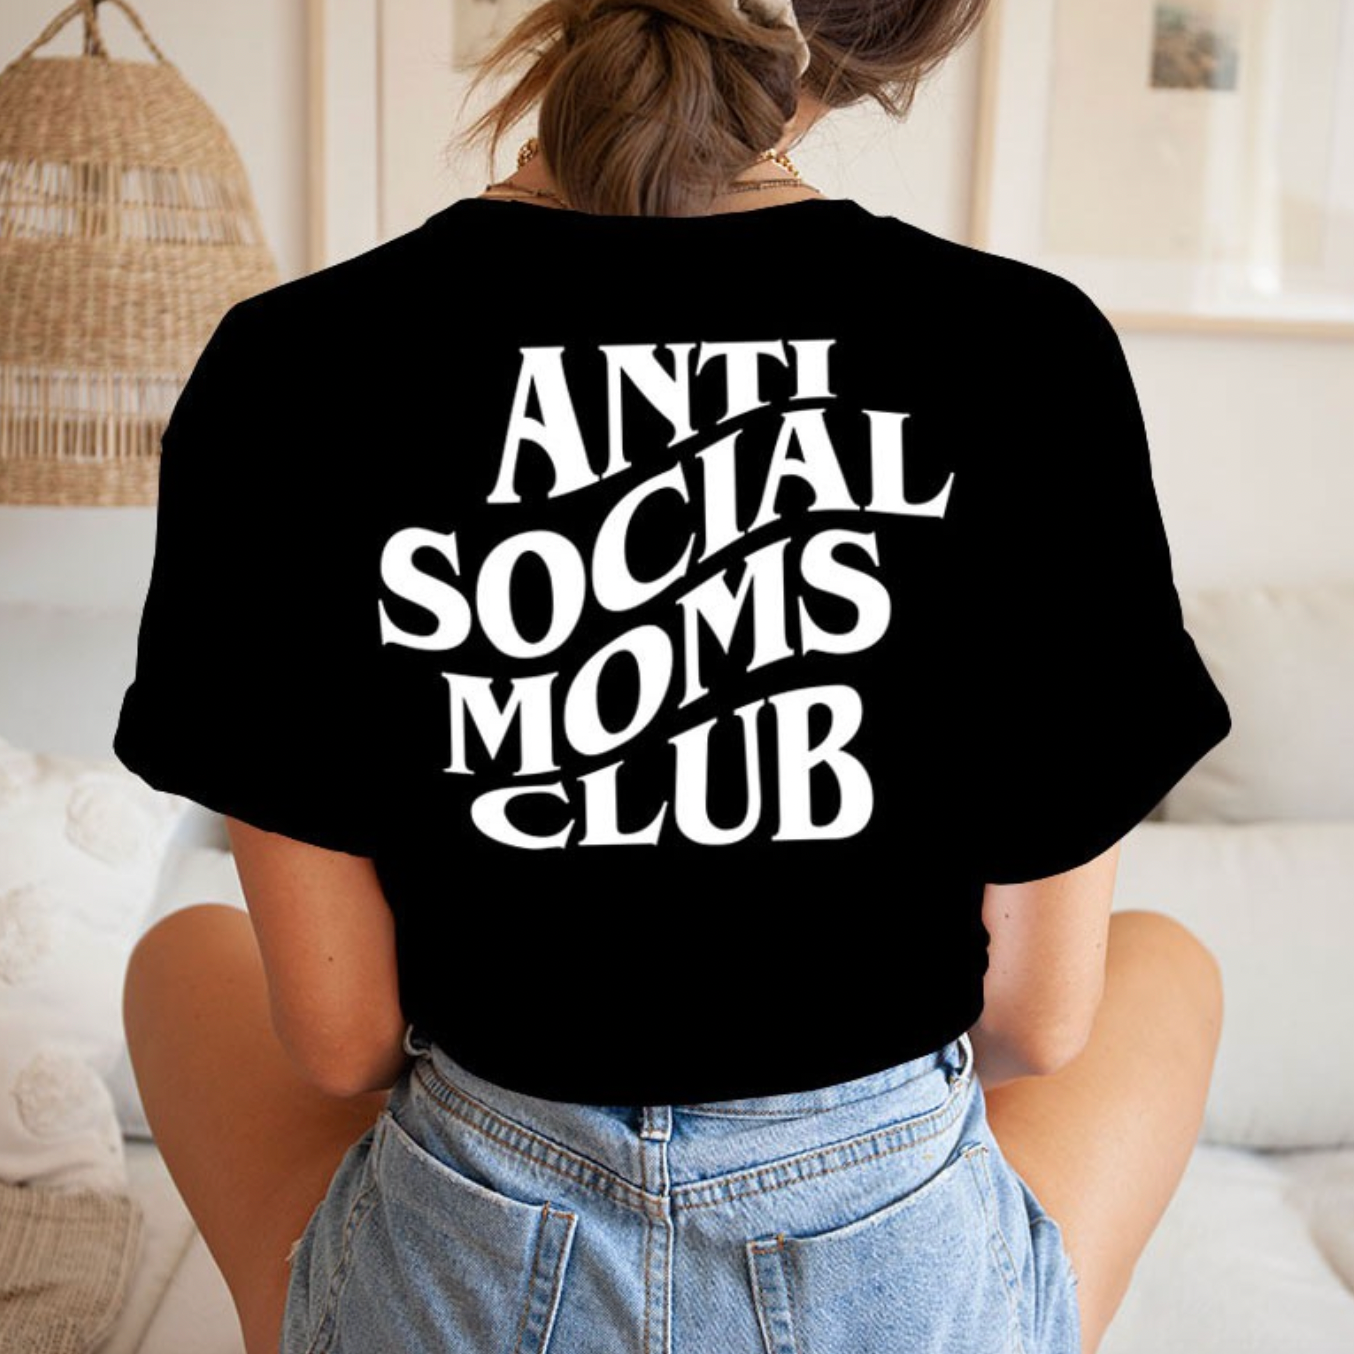 Antisocial moms club shirt designs